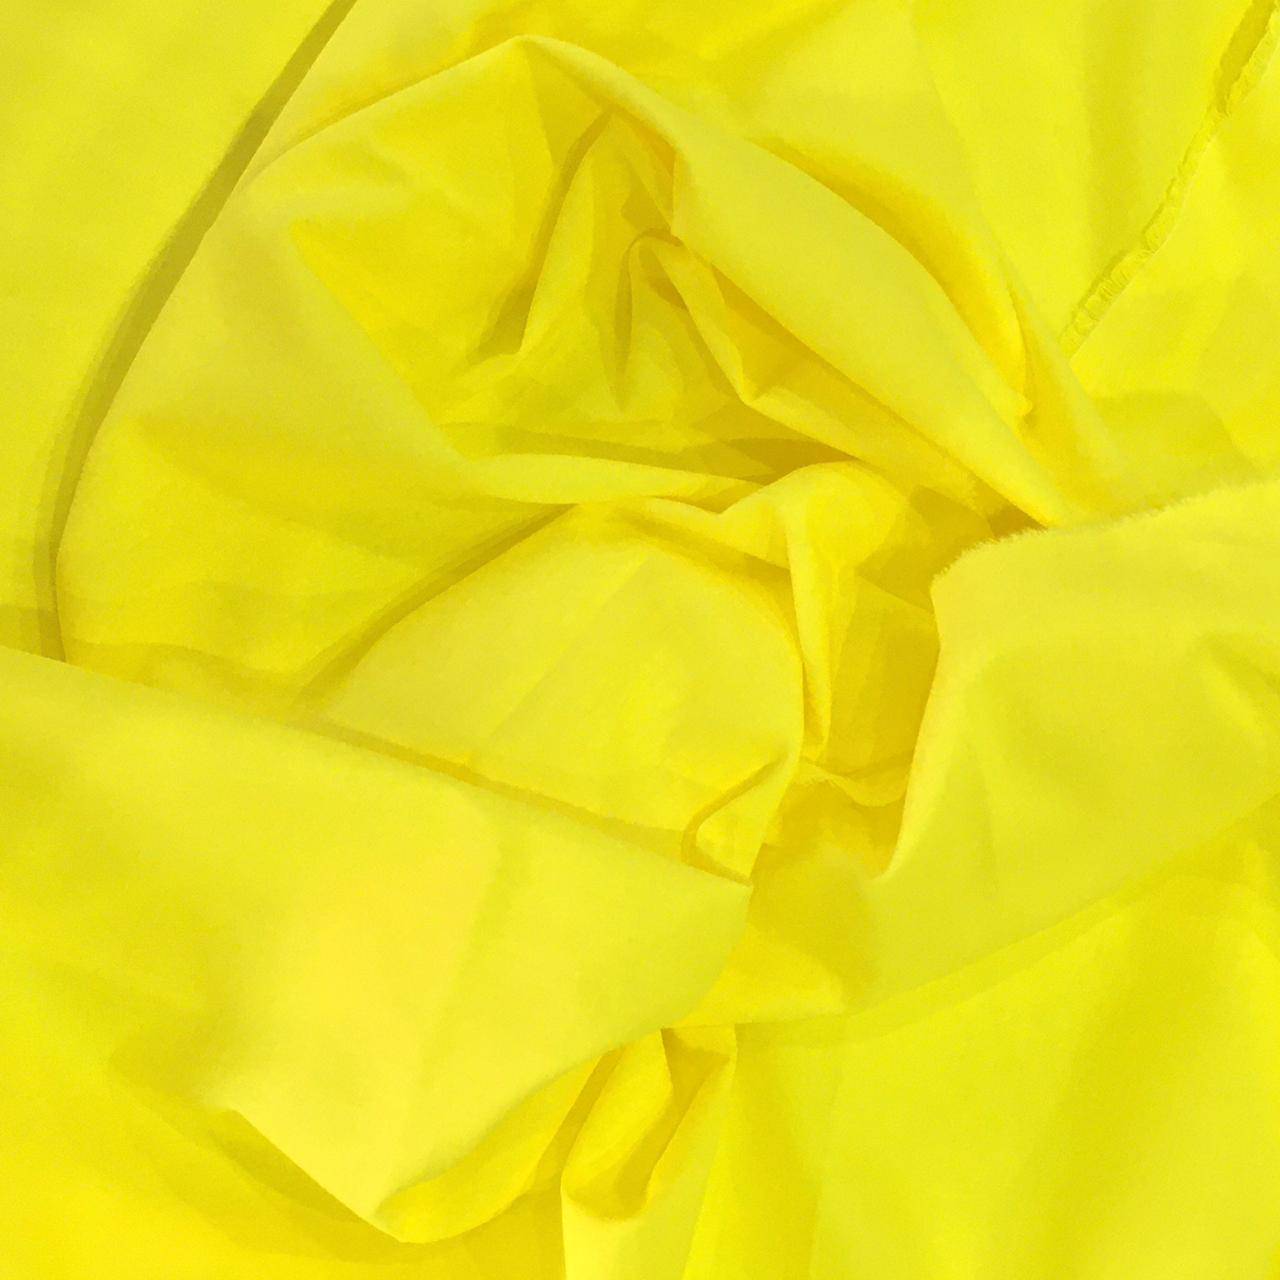 Tecido Tricoline 100% algodão Xadrez Amarelo Canário